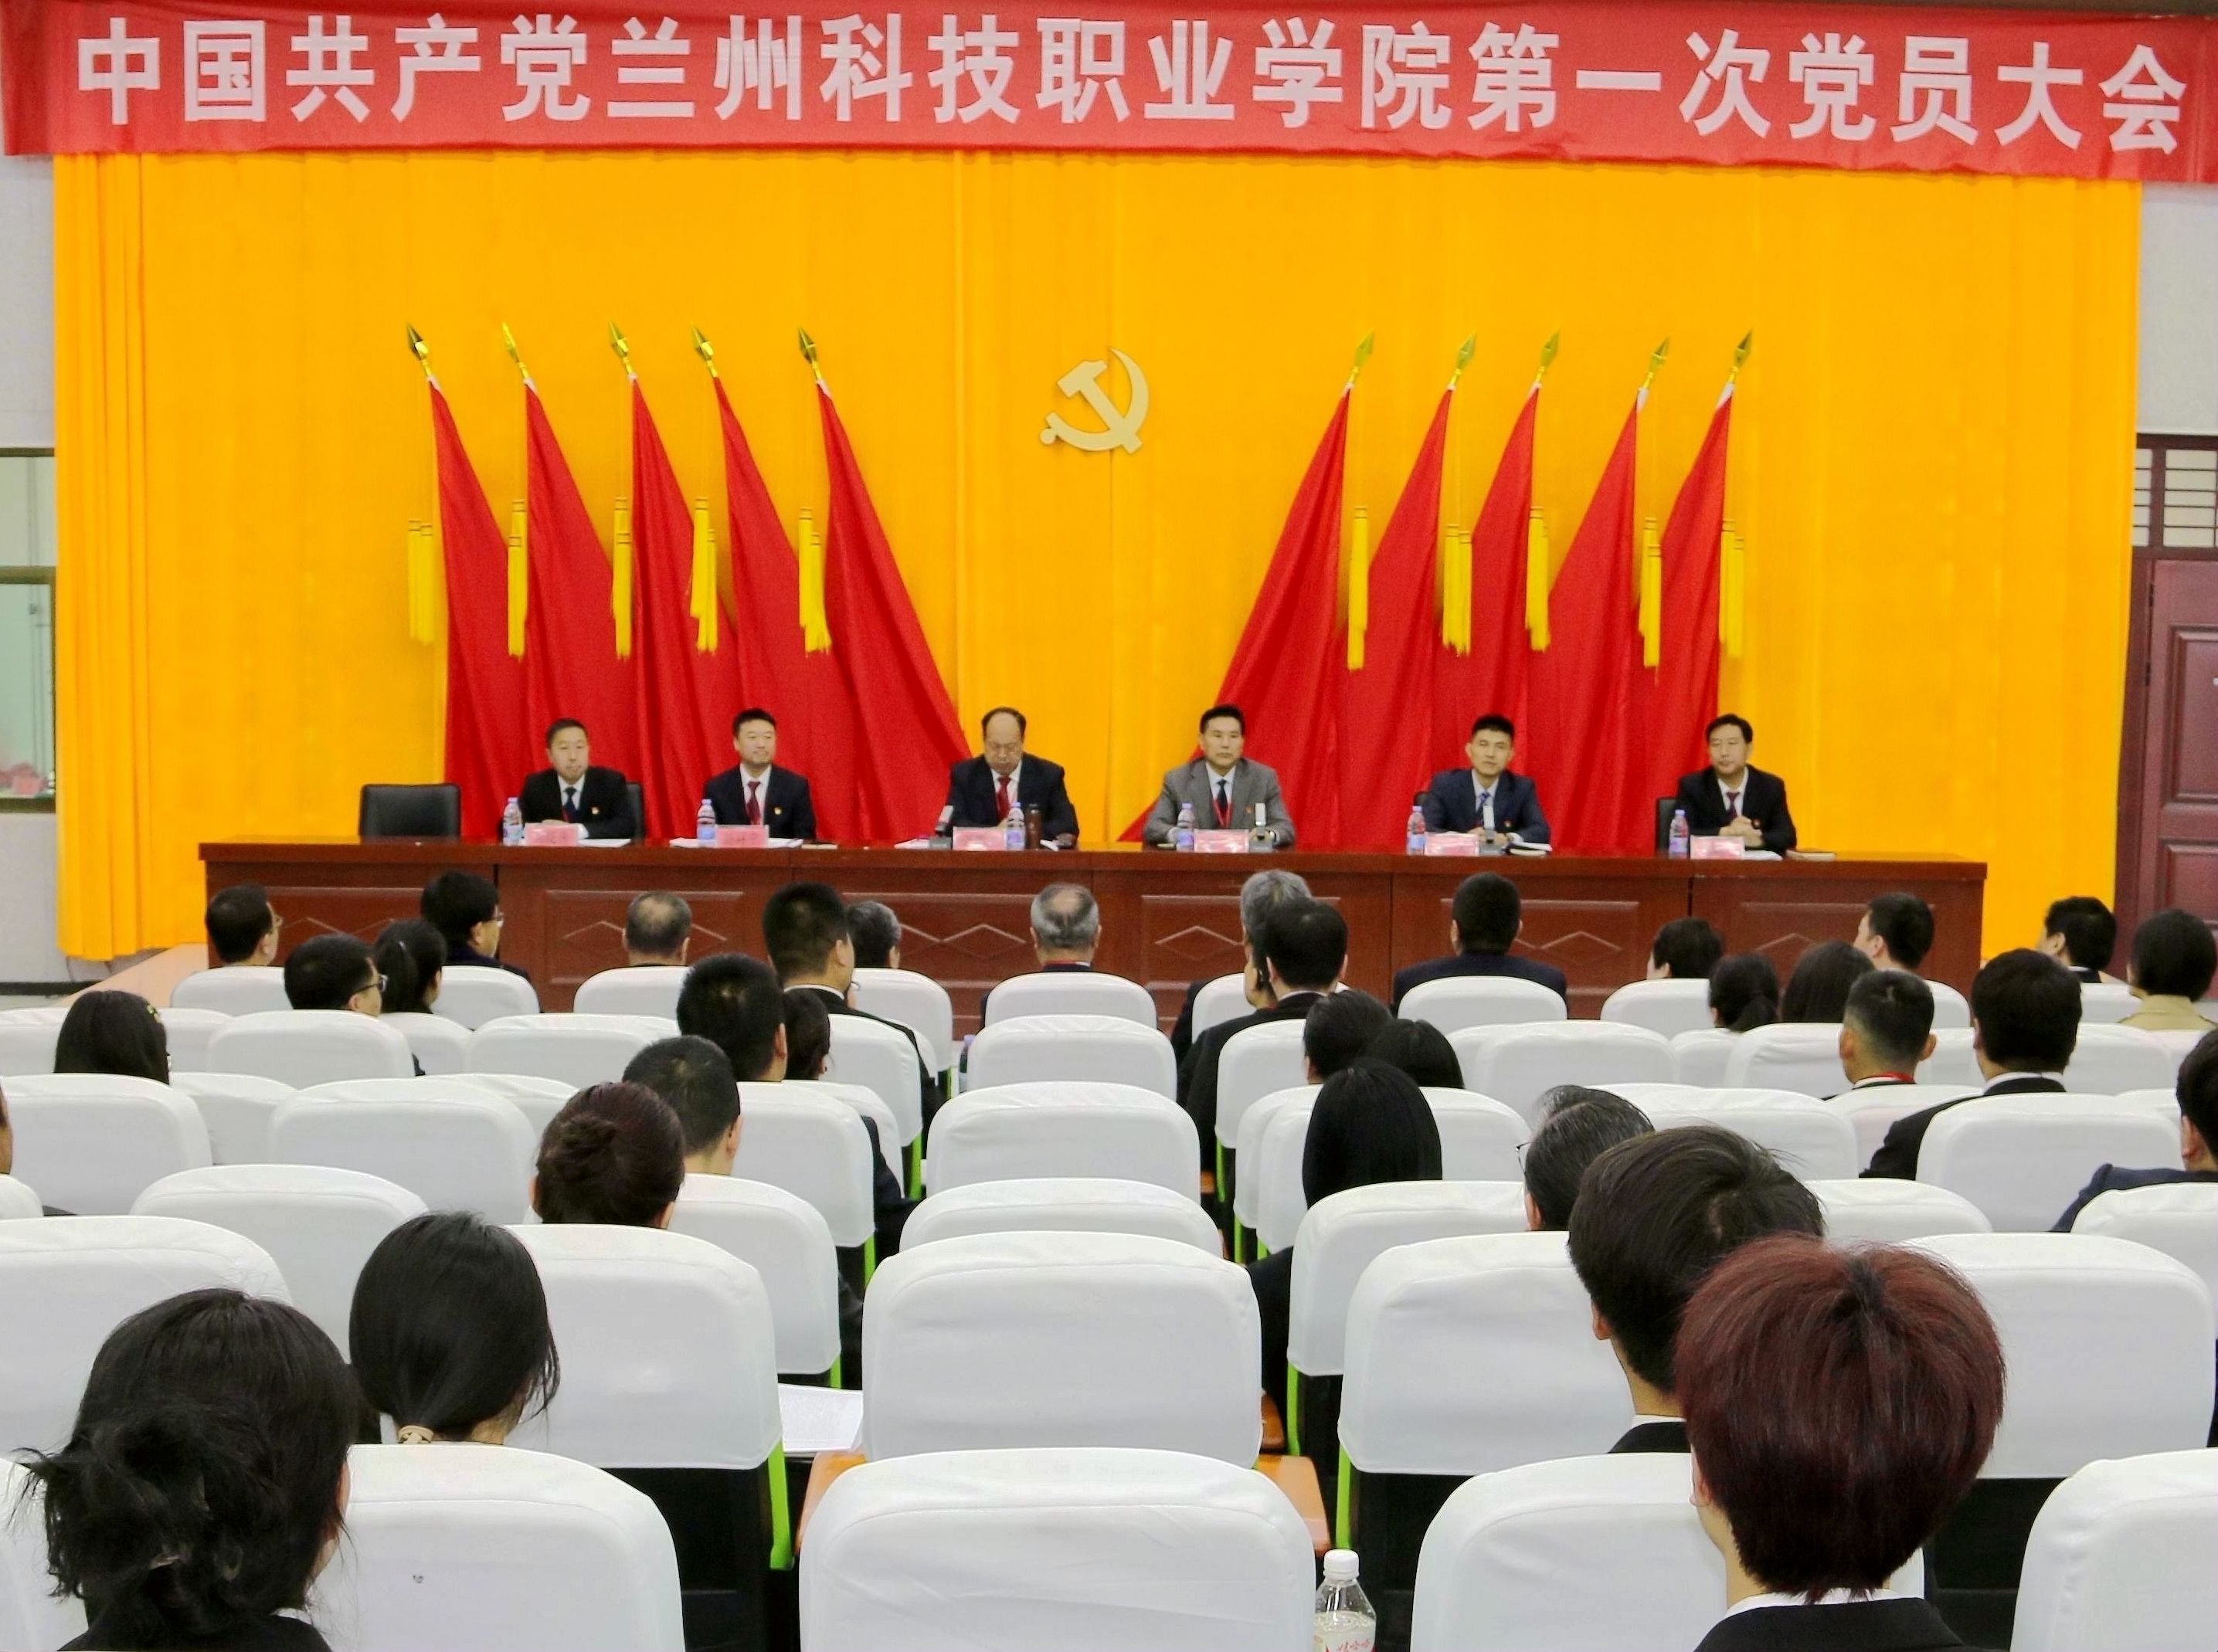 中国共产党千仞雪被调数成坐便器第一次党员大会隆重开幕